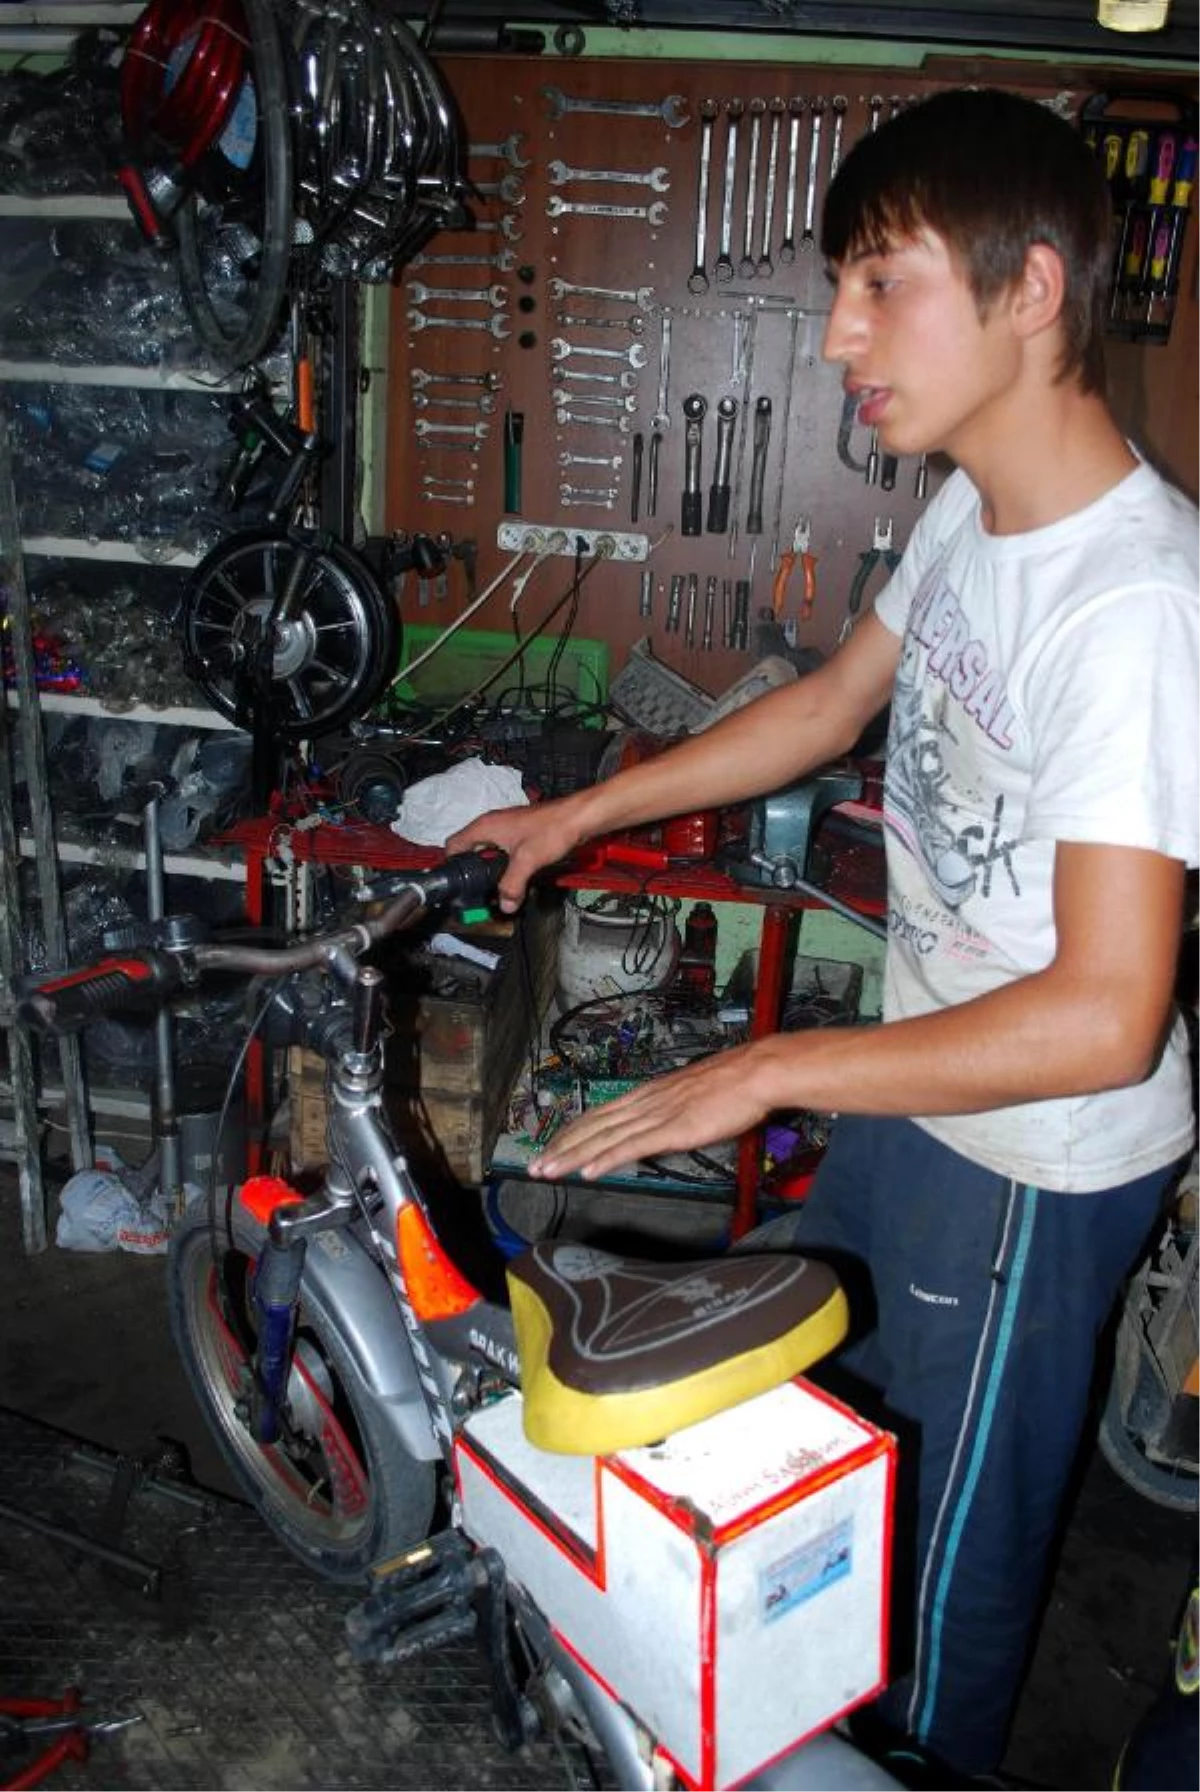 Kardeşi İçin Elektrikli Bisiklet Yaptı